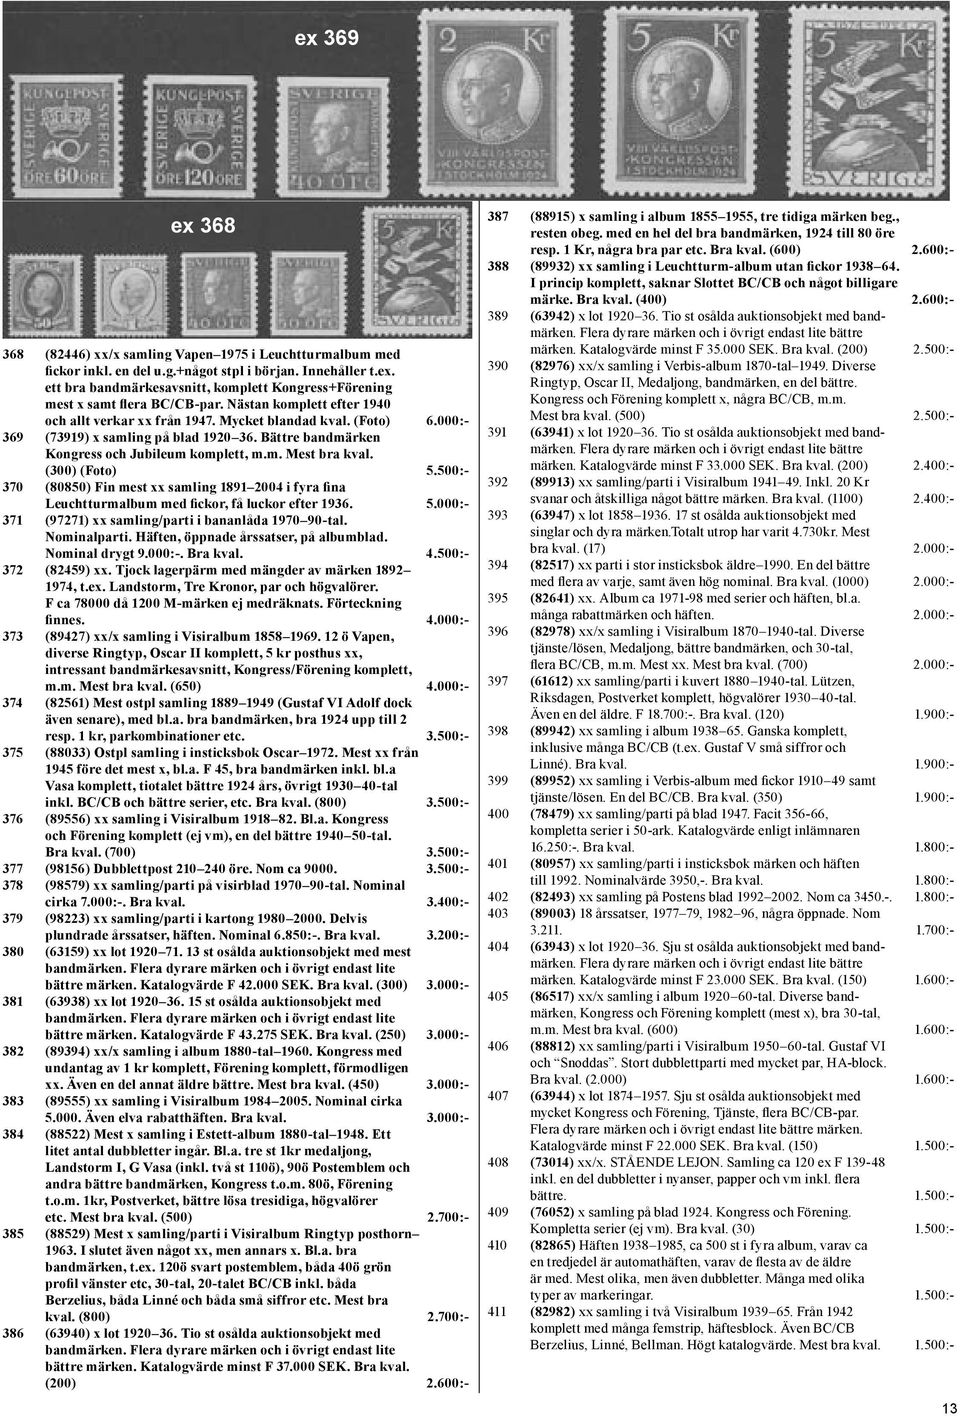 (300) (Foto) 5.500:- 370 (80850) Fin mest xx samling 1891 2004 i fyra fina Leuchtturmalbum med fickor, få luckor efter 1936. 5.000:- 371 (97271) xx samling/parti i bananlåda 1970 90-tal. Nominalparti.